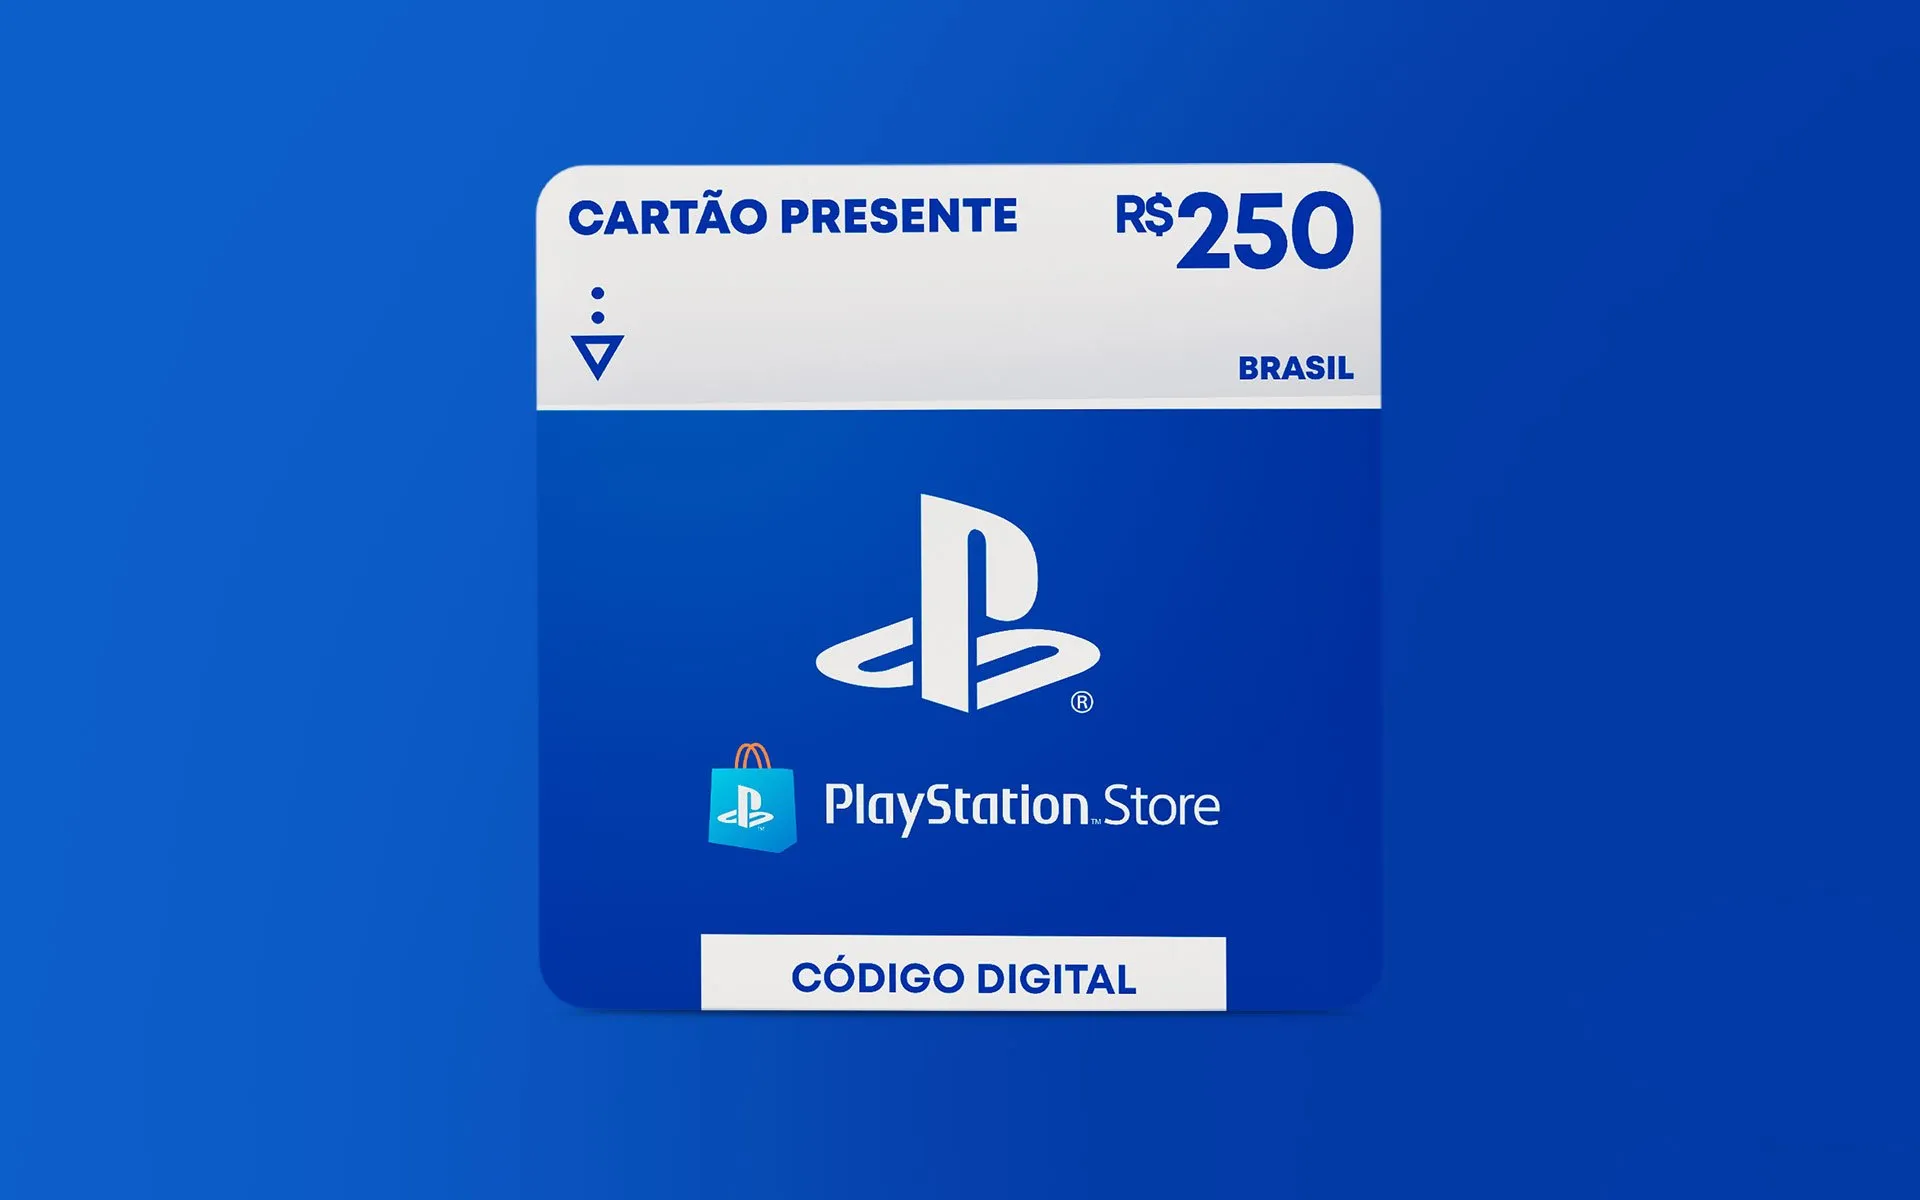 R$250 Playstation Store - Carto Presente Digital [Exclusivo Brasil]